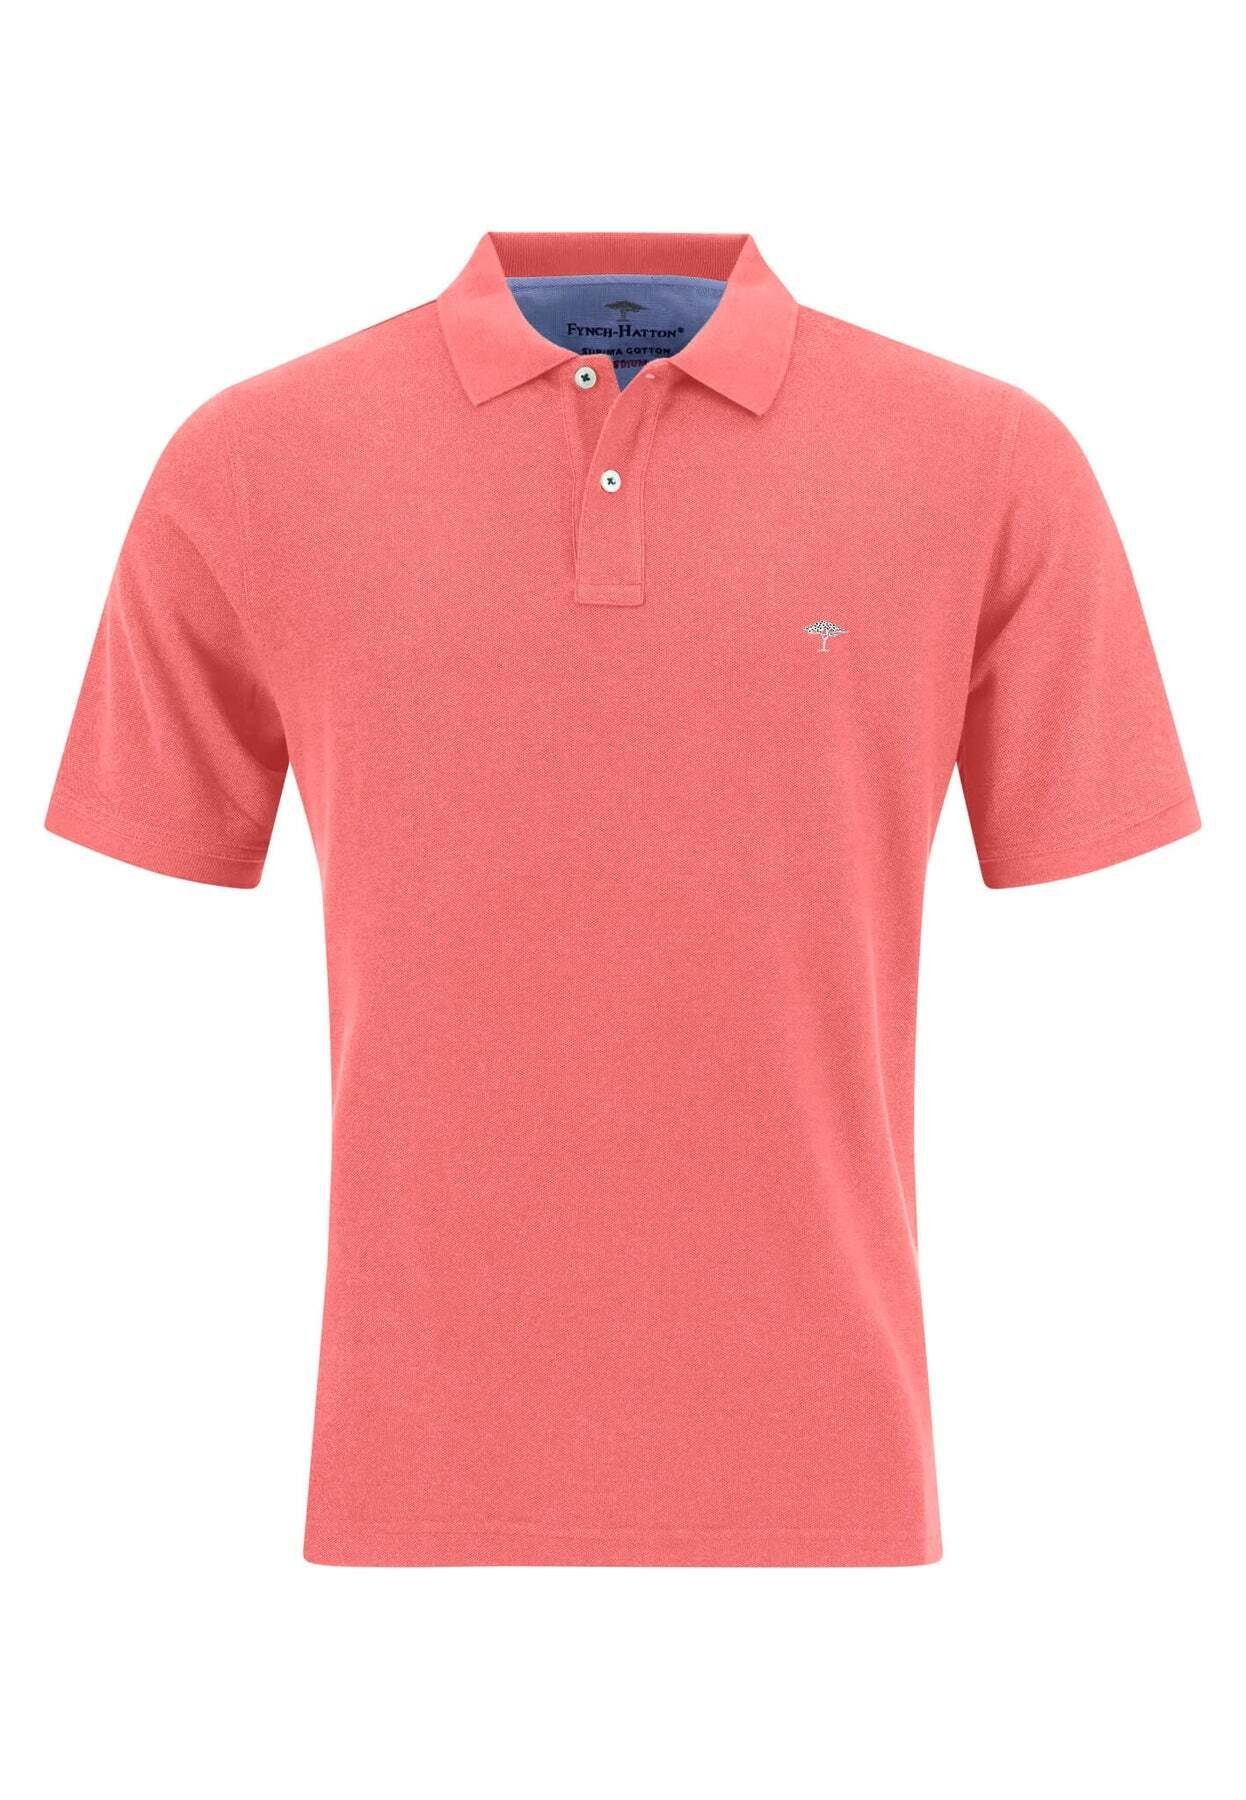 pink Poloshirt mit FYNCH-HATTON Kurzarmshirt Polokragen Poloshirt